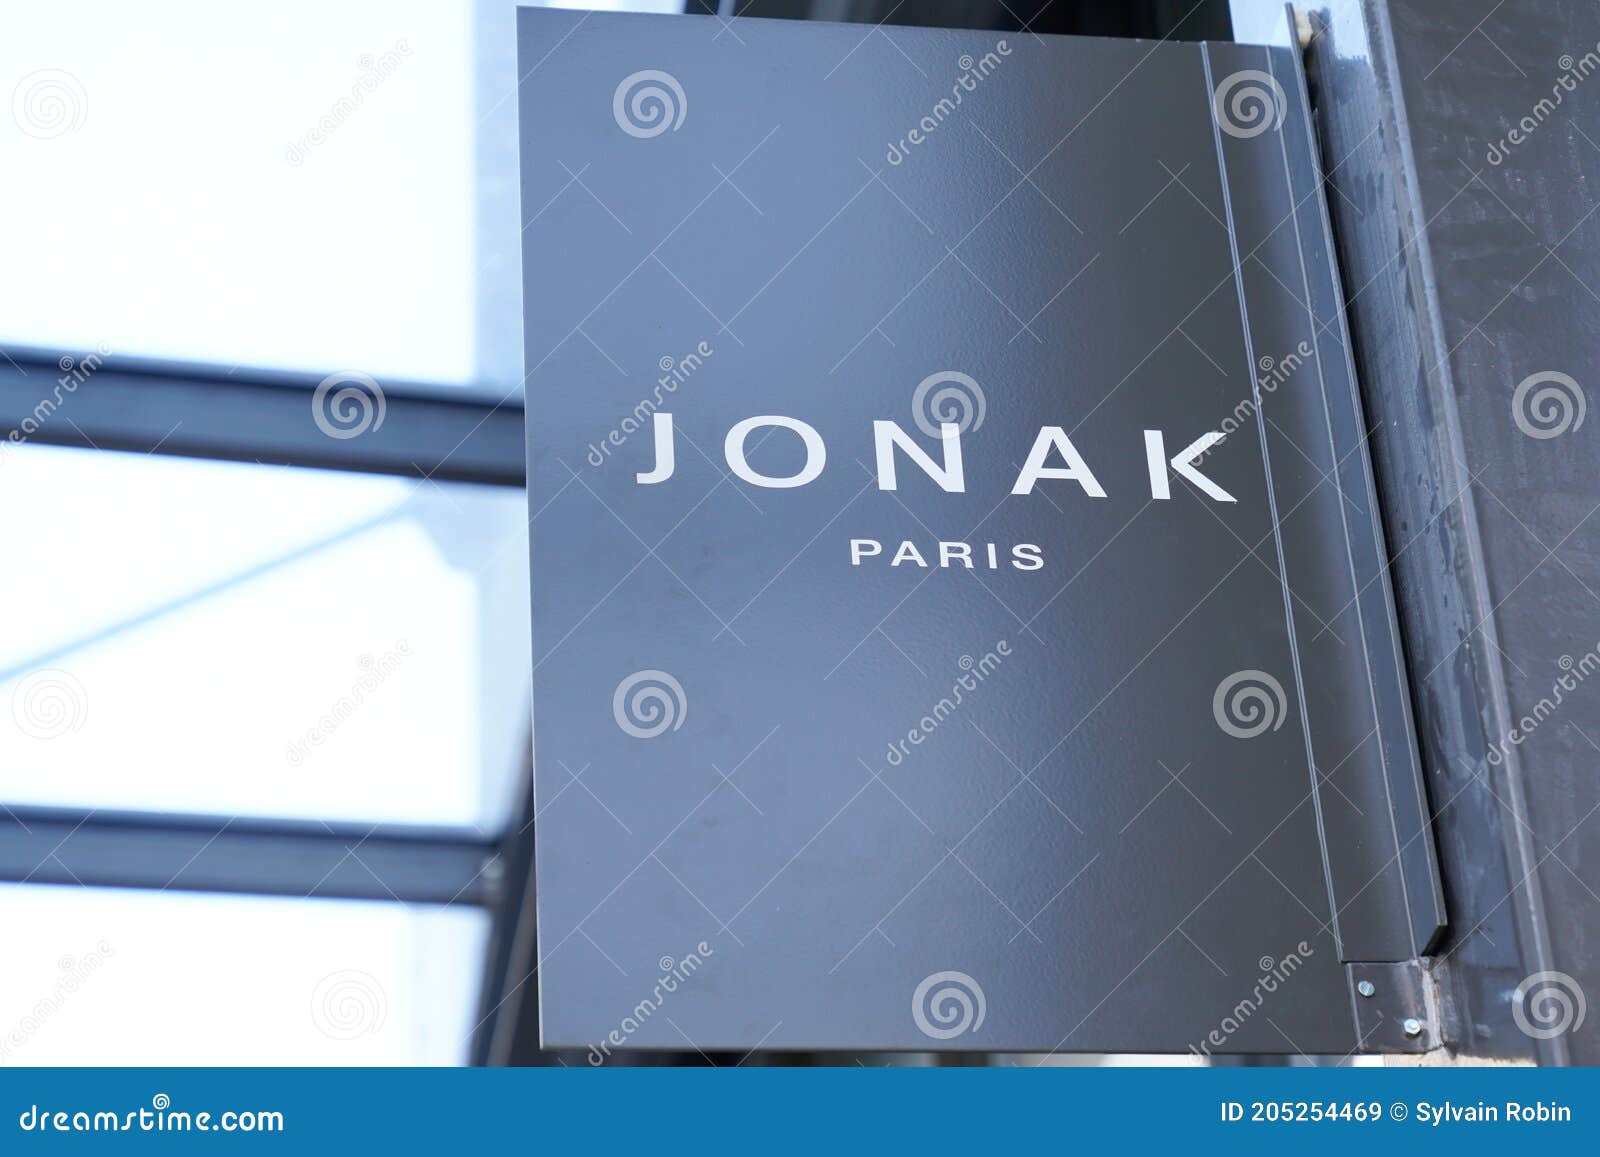 Buy > jonak france > in stock